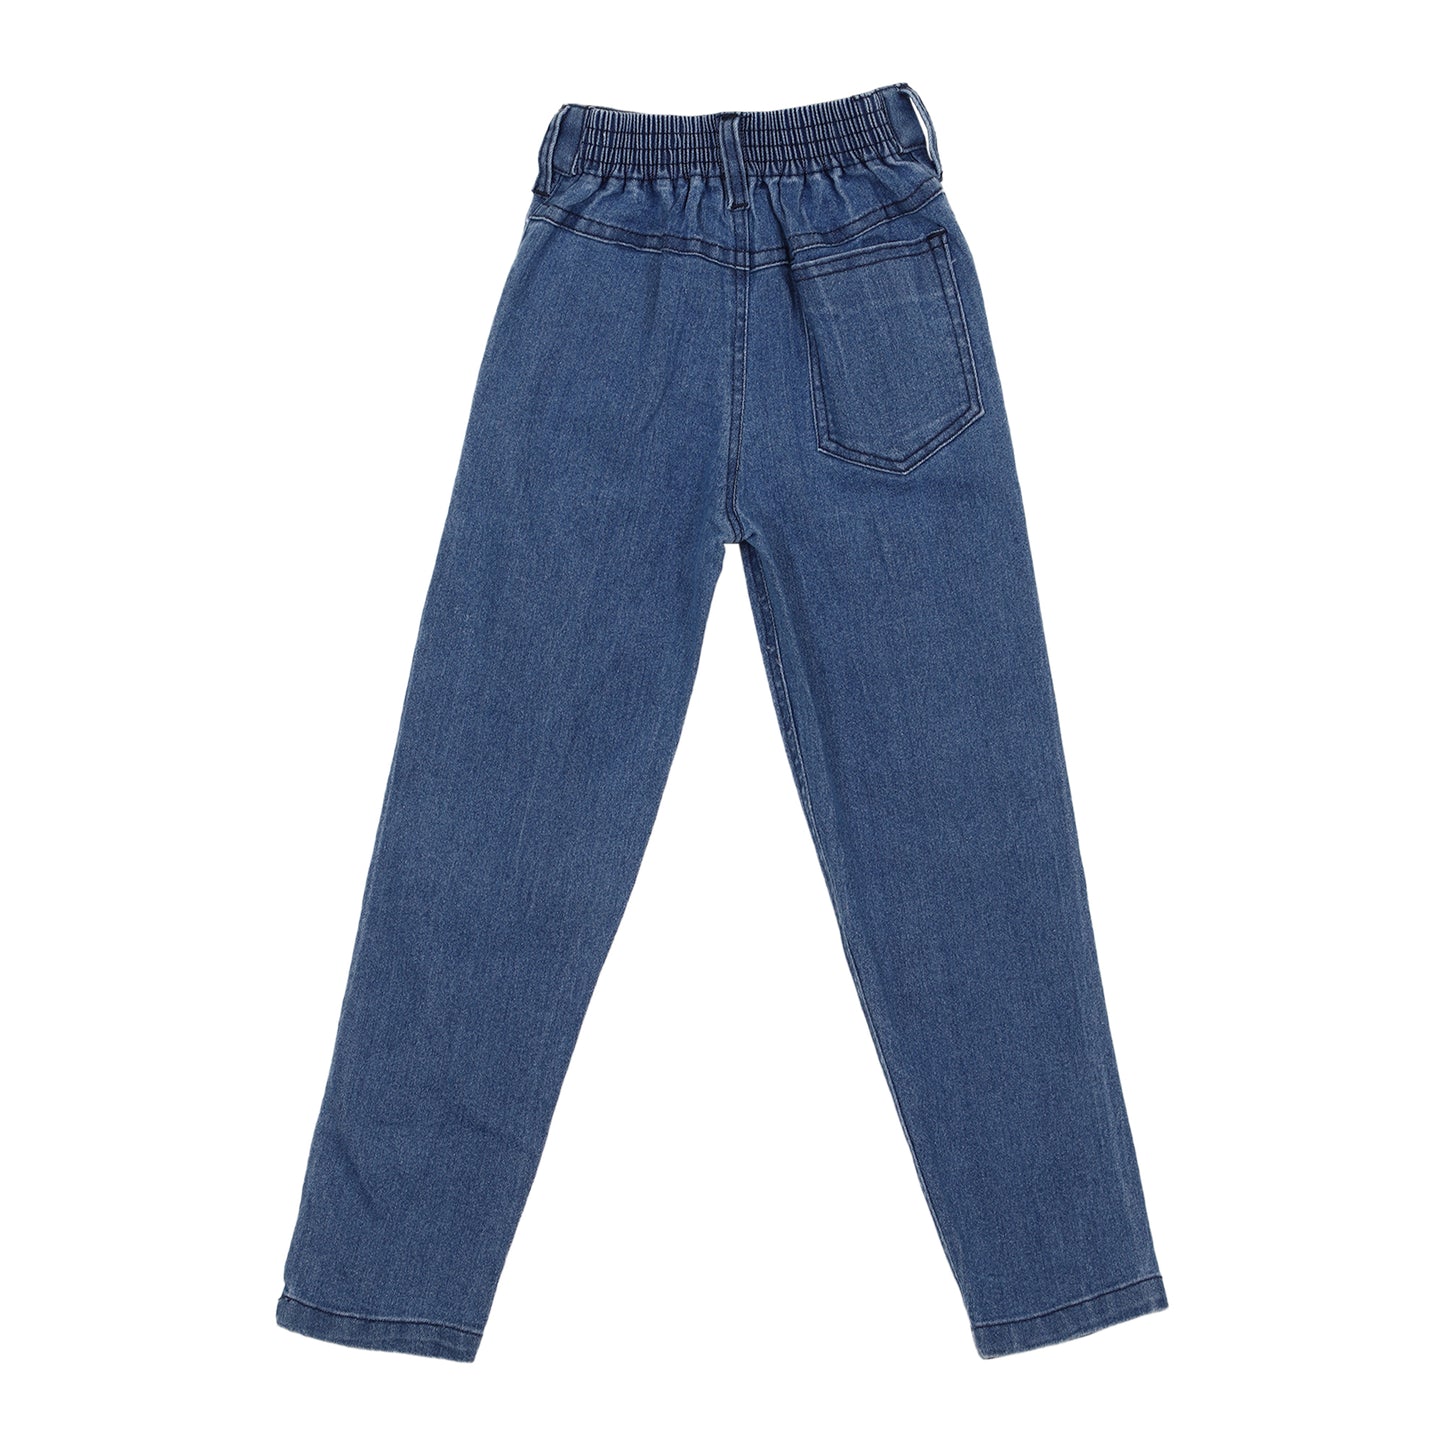 Denim Jeans for Boys - 6